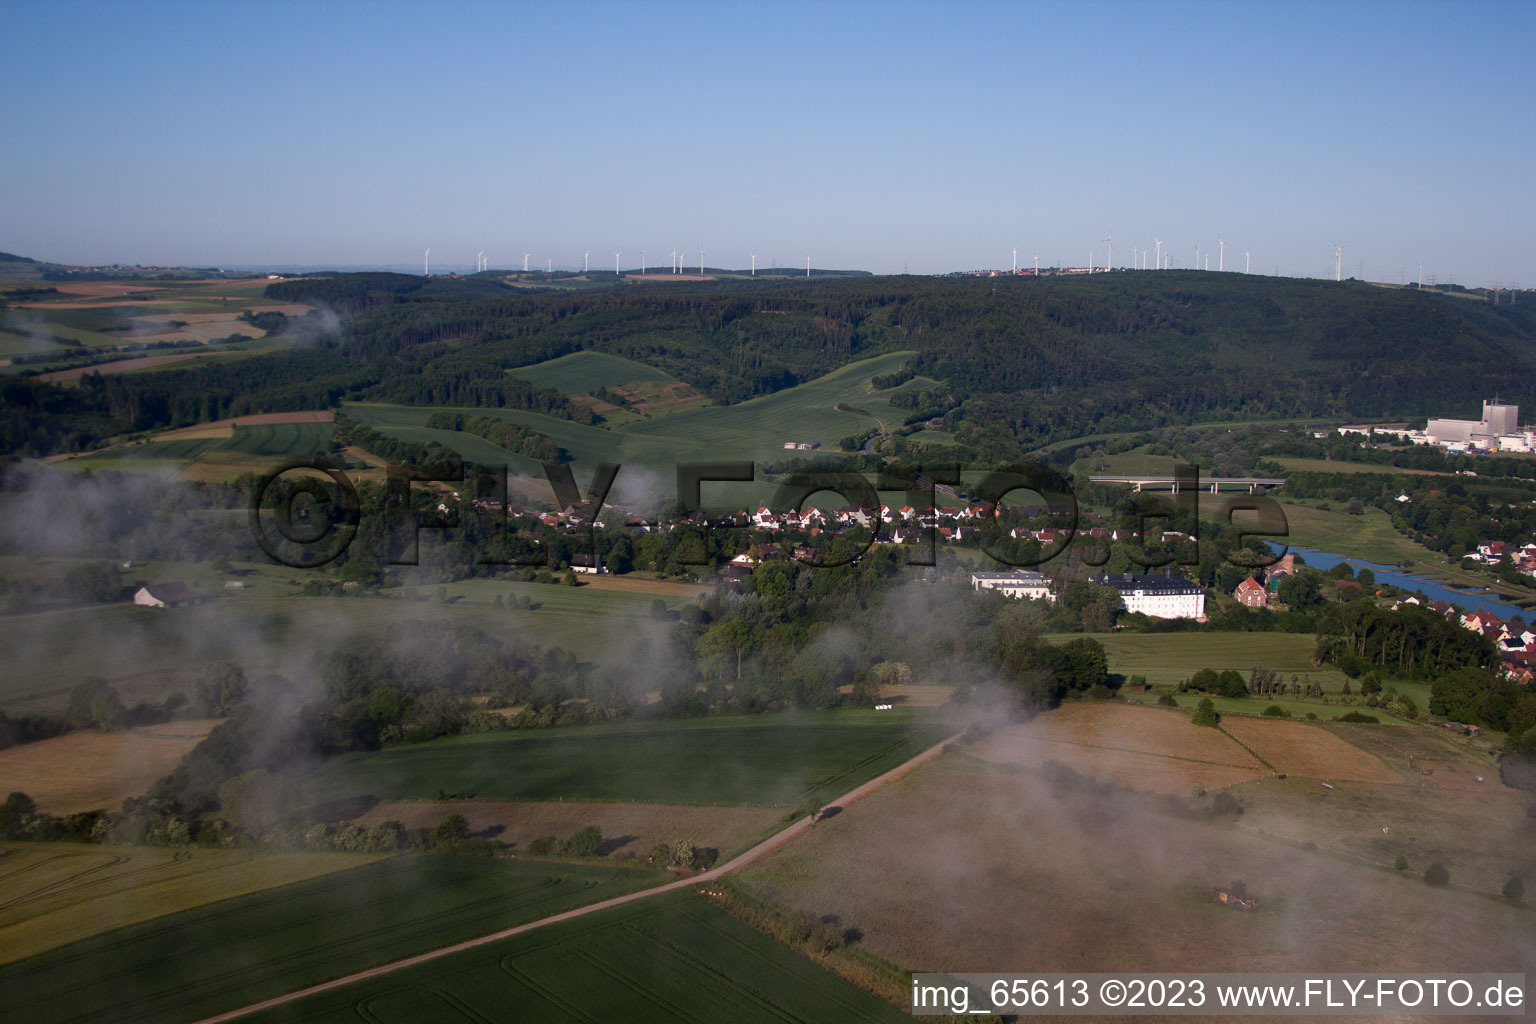 Herstelle im Bundesland Nordrhein-Westfalen, Deutschland aus der Luft betrachtet